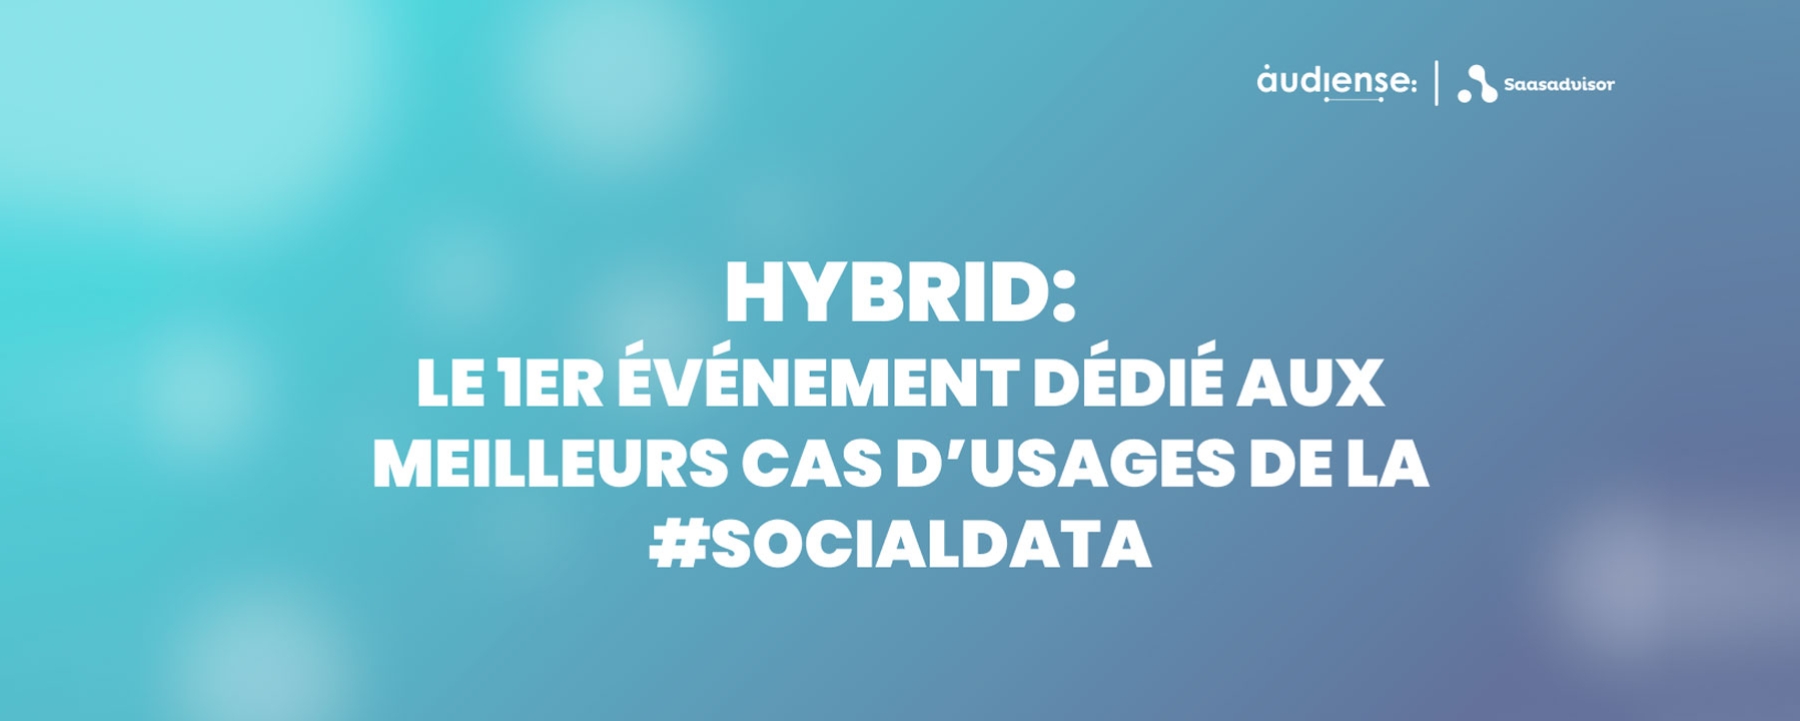 Hybrid, le 1er événement dédié aux meilleurs cas d'usages de la Social Data